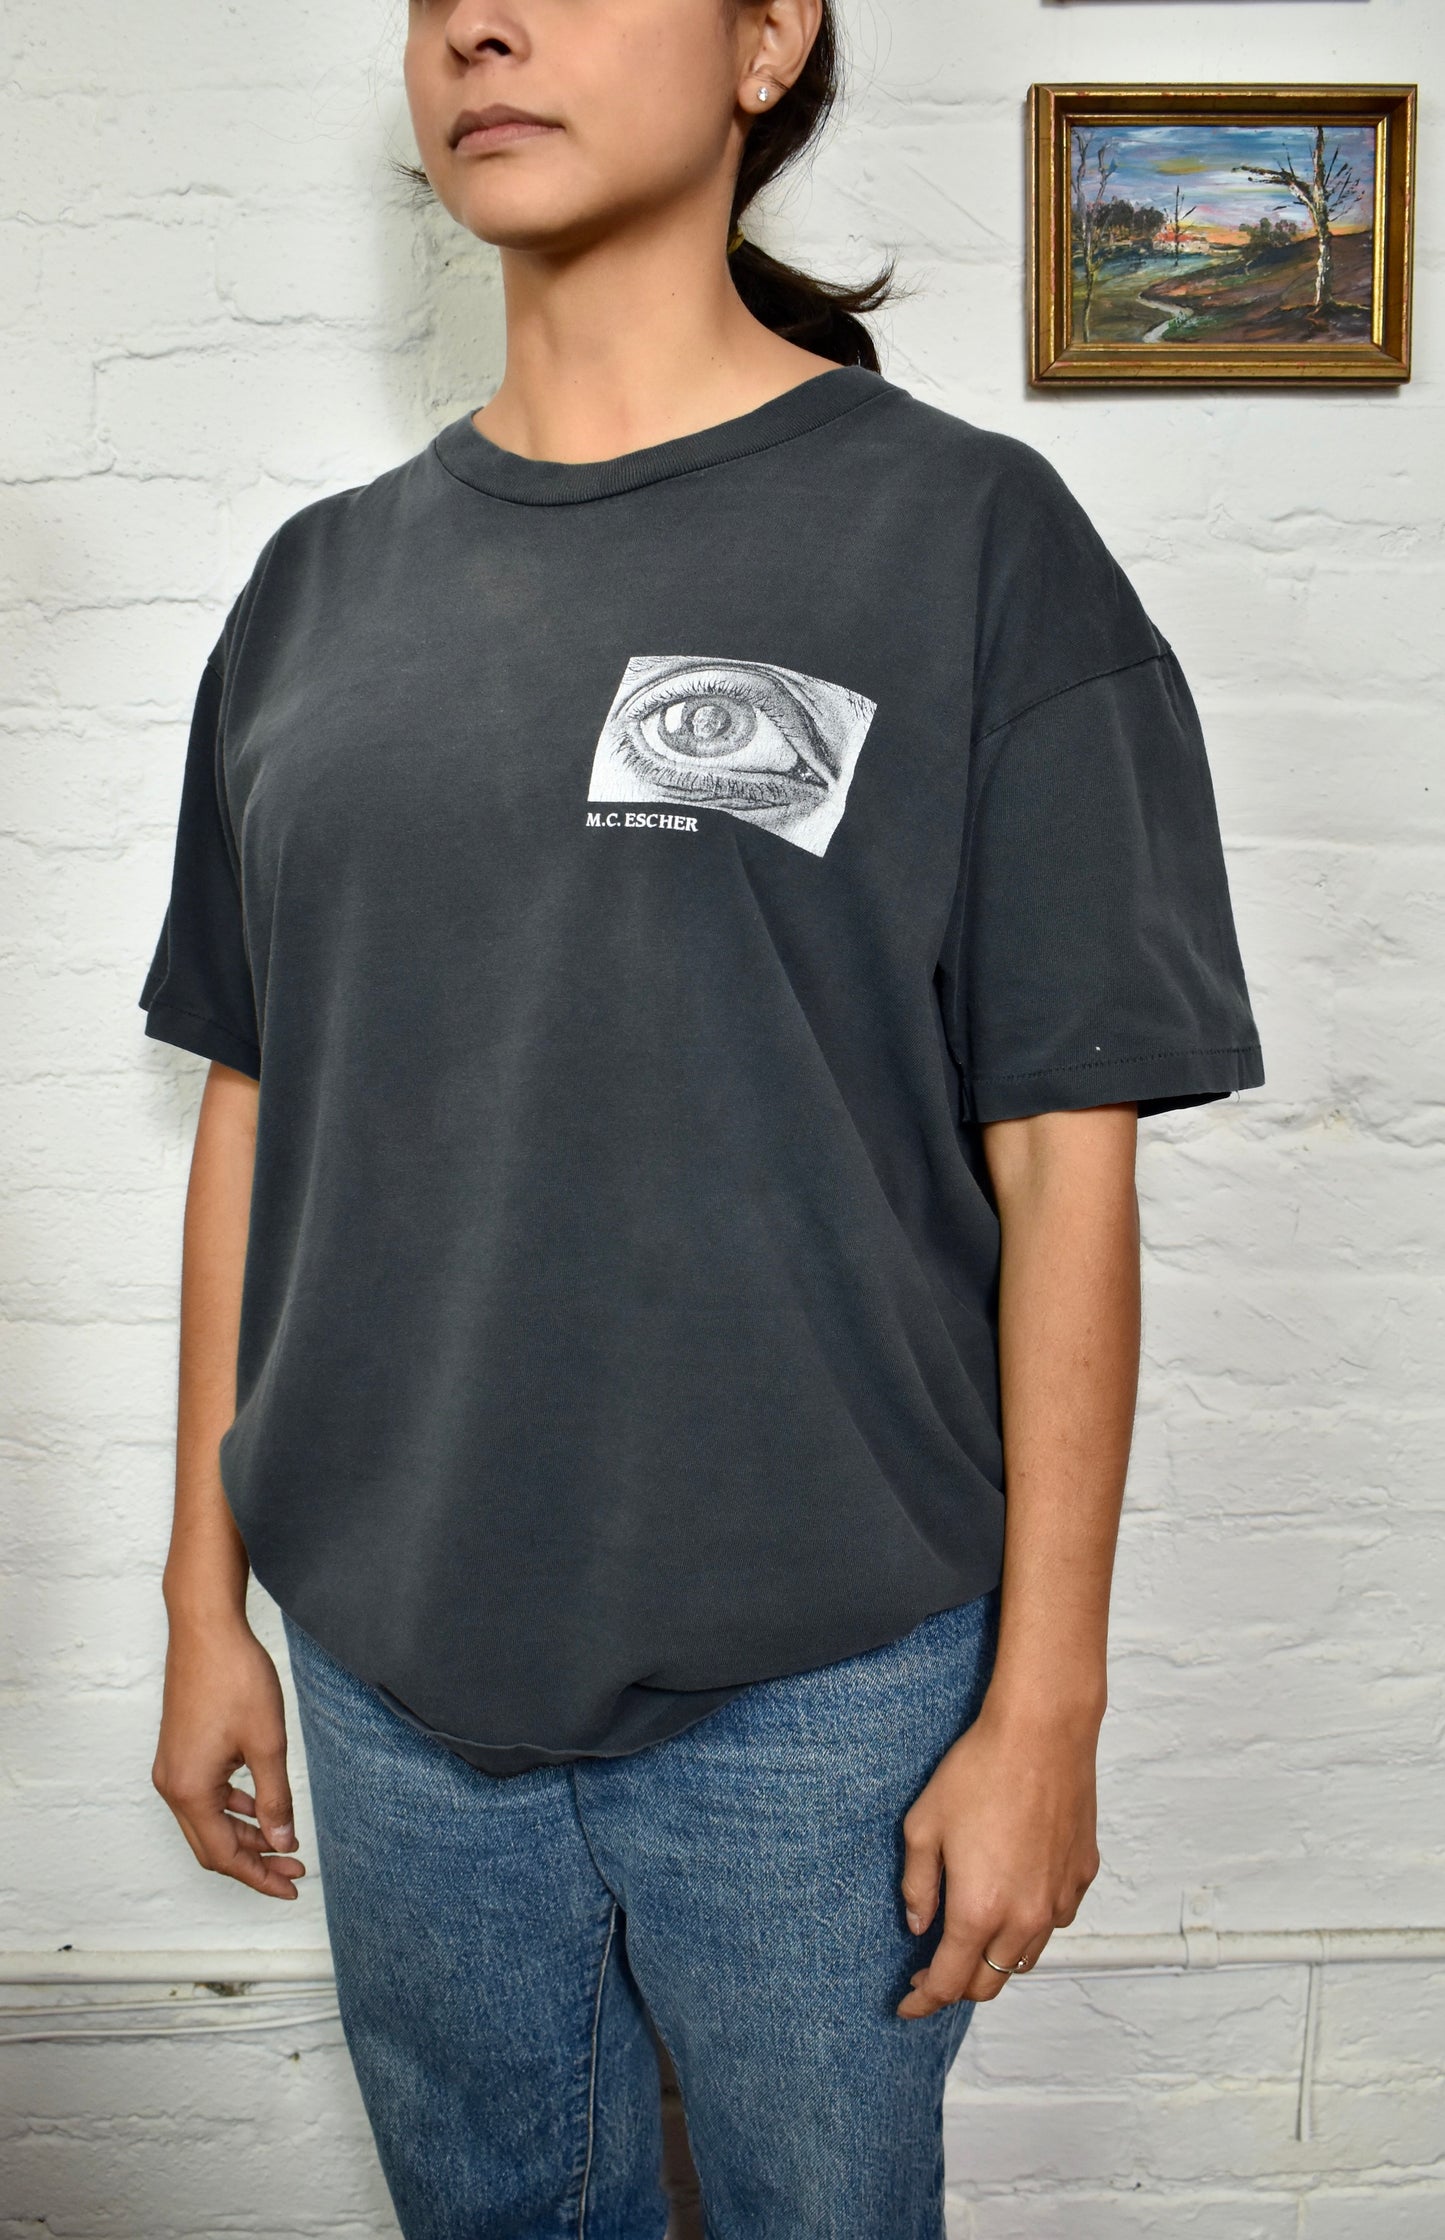 Vintage 90s M.C. Escher Skull Eye Graphic T-shirt